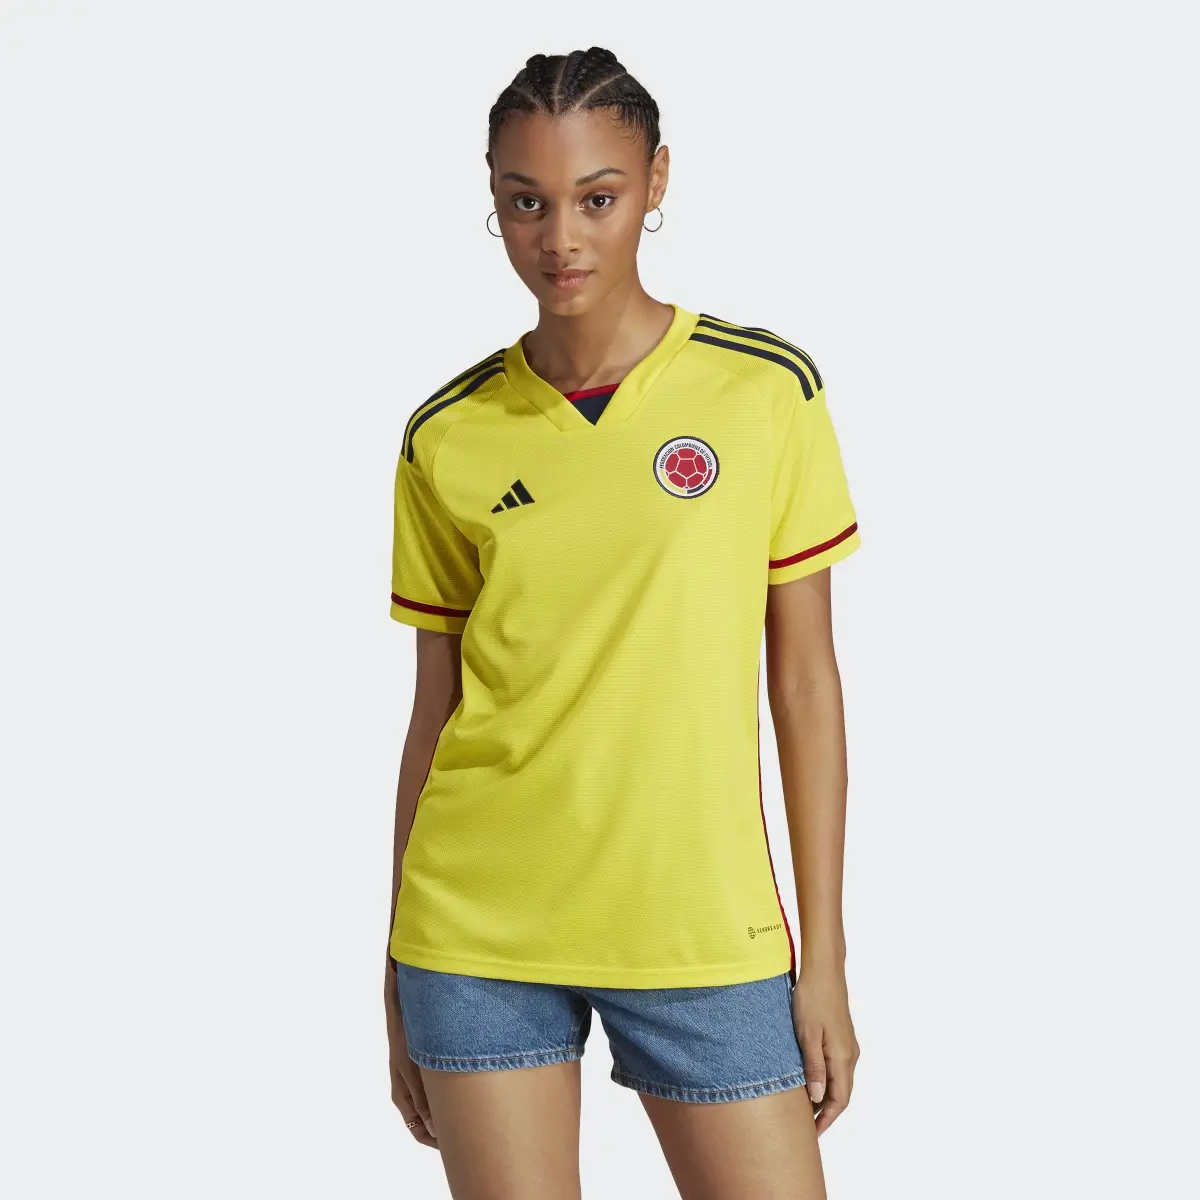 Adidas Jersey Uniforme de Local Selección Colombia 22. 2